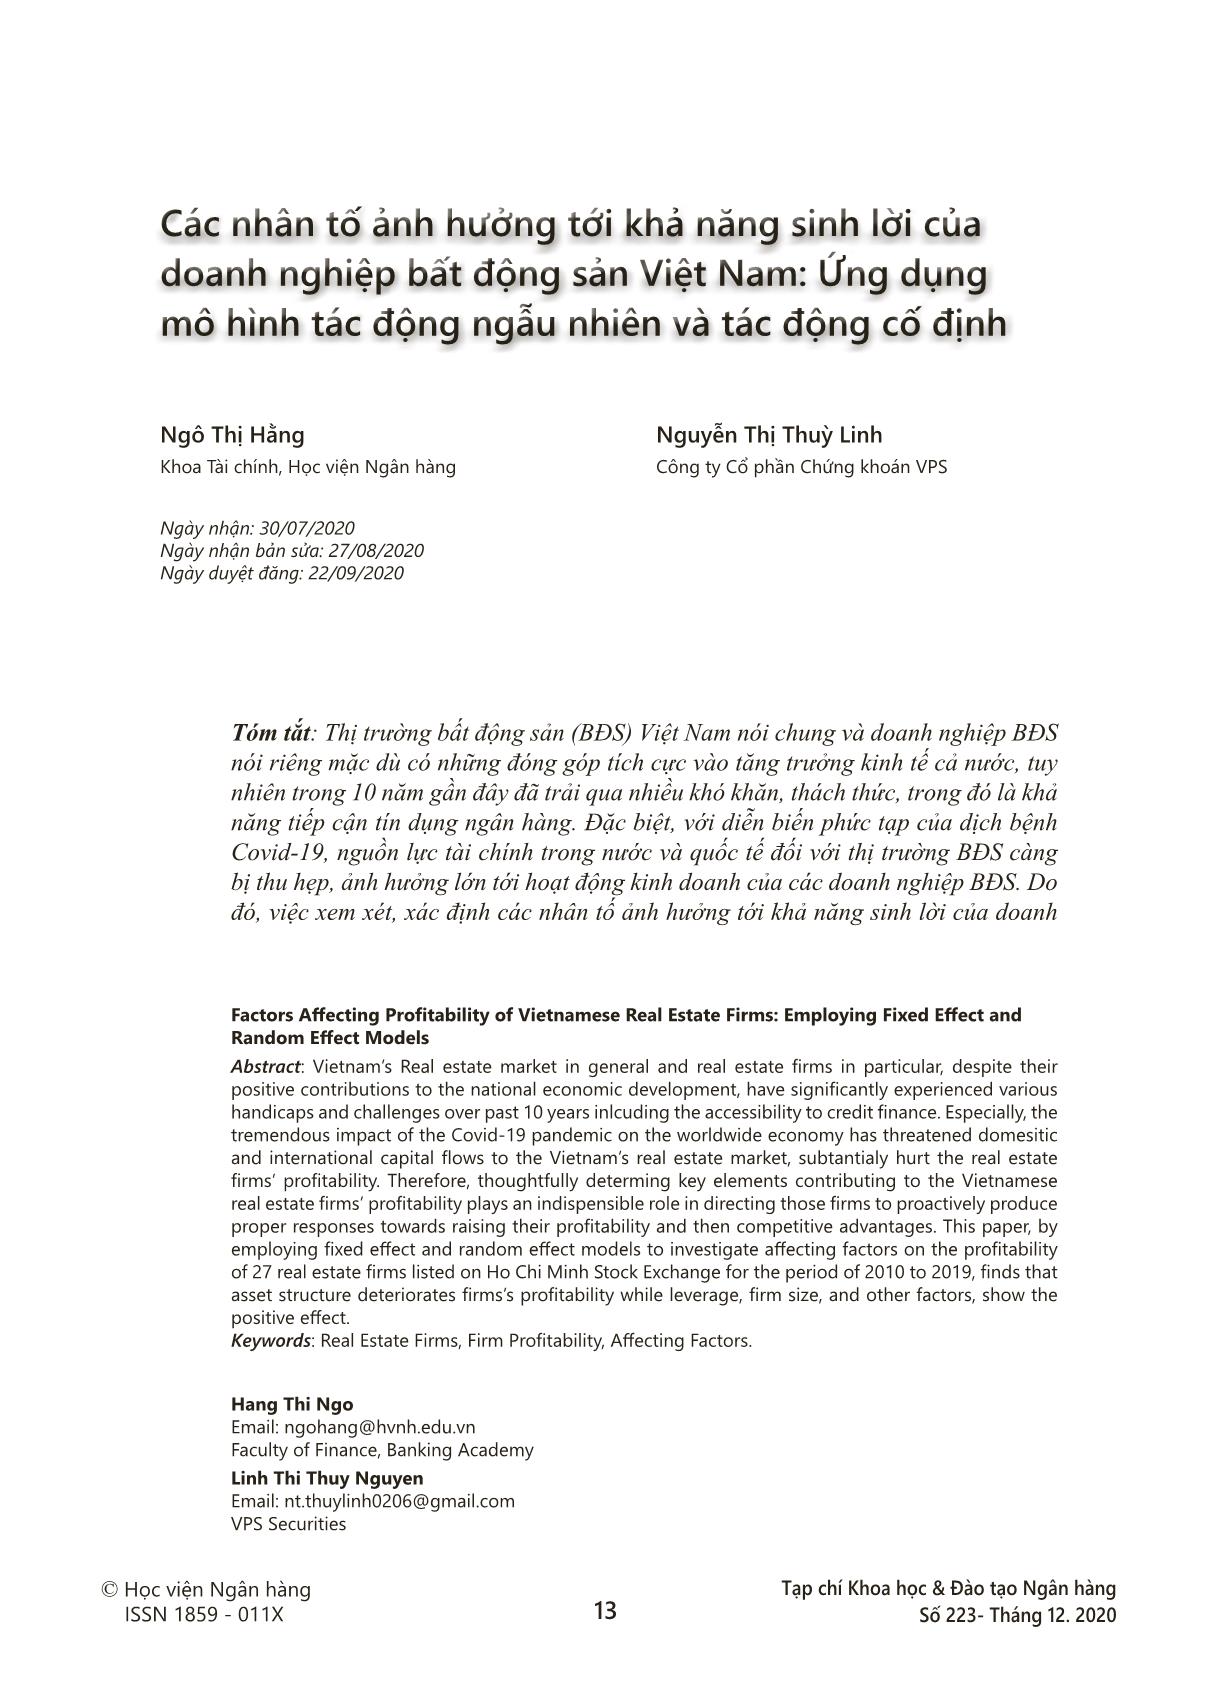 Các nhân tố ảnh hưởng tới khả năng sinh lời của doanh nghiệp bất động sản Việt Nam: Ứng dụng mô hình tác động ngẫu nhiên và tác động cố định trang 1